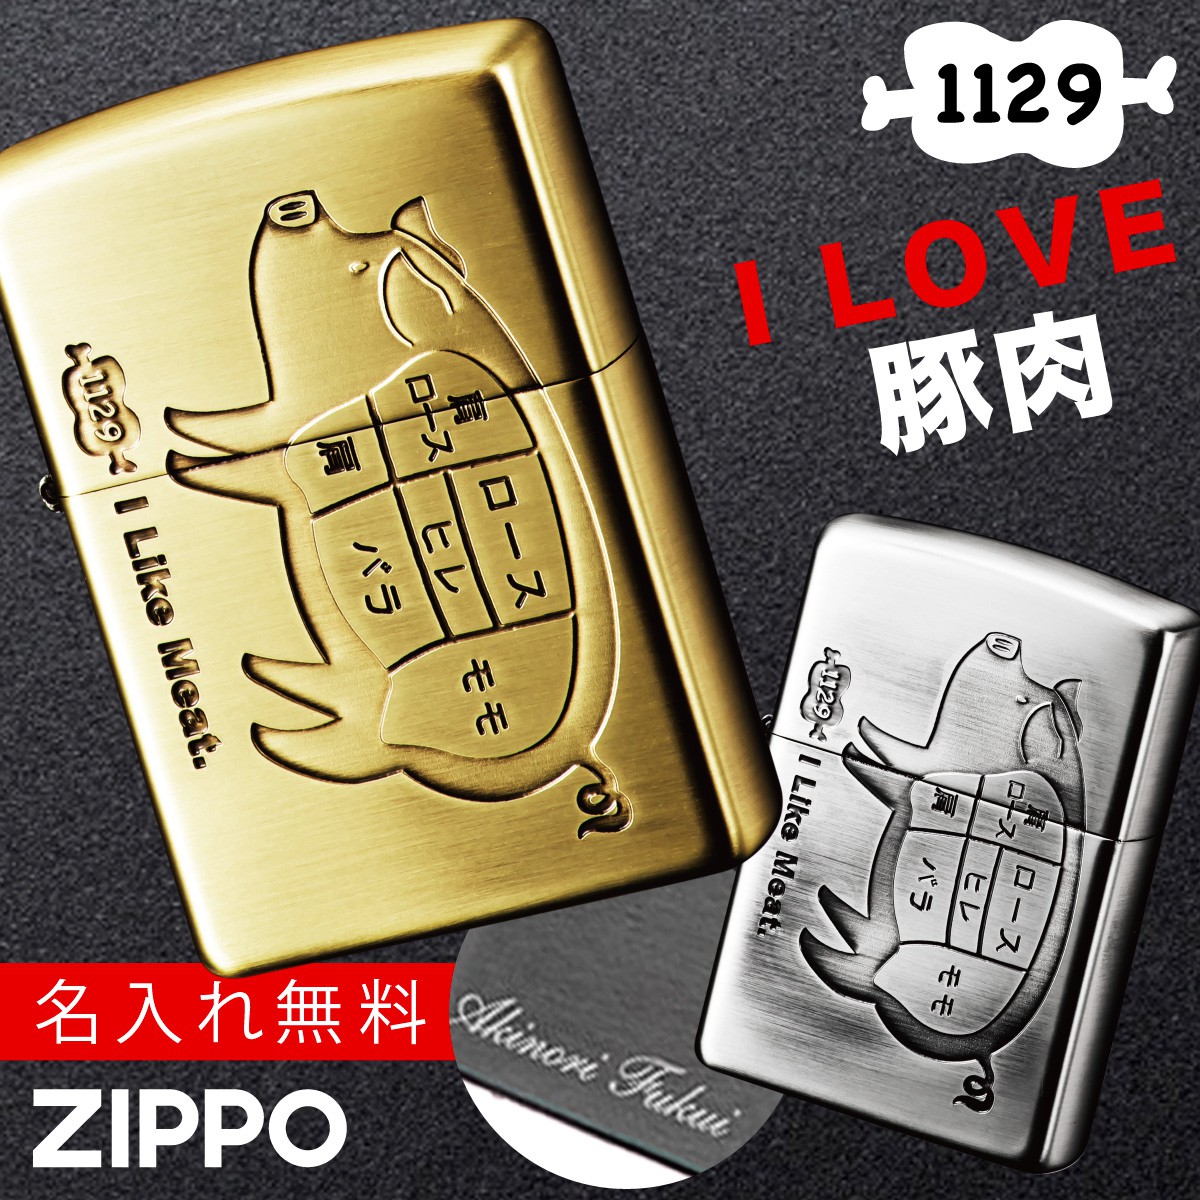 【楽天市場】【返品不可】【返品不可】zippo ライター 名入れ 彫刻 ブランド ジッポーライター zippoライター Zippoライター